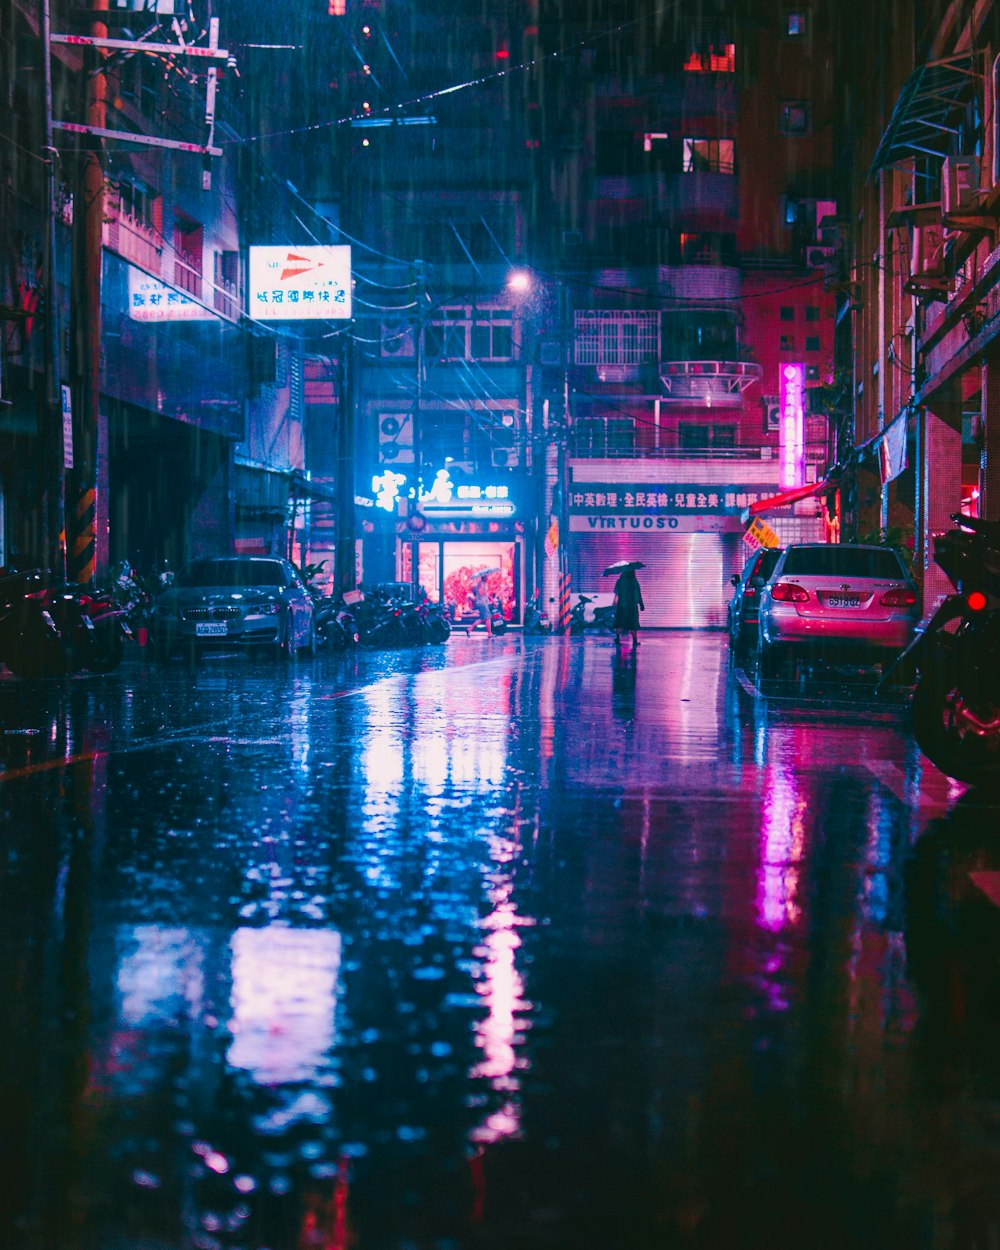 Una calle mojada por la noche